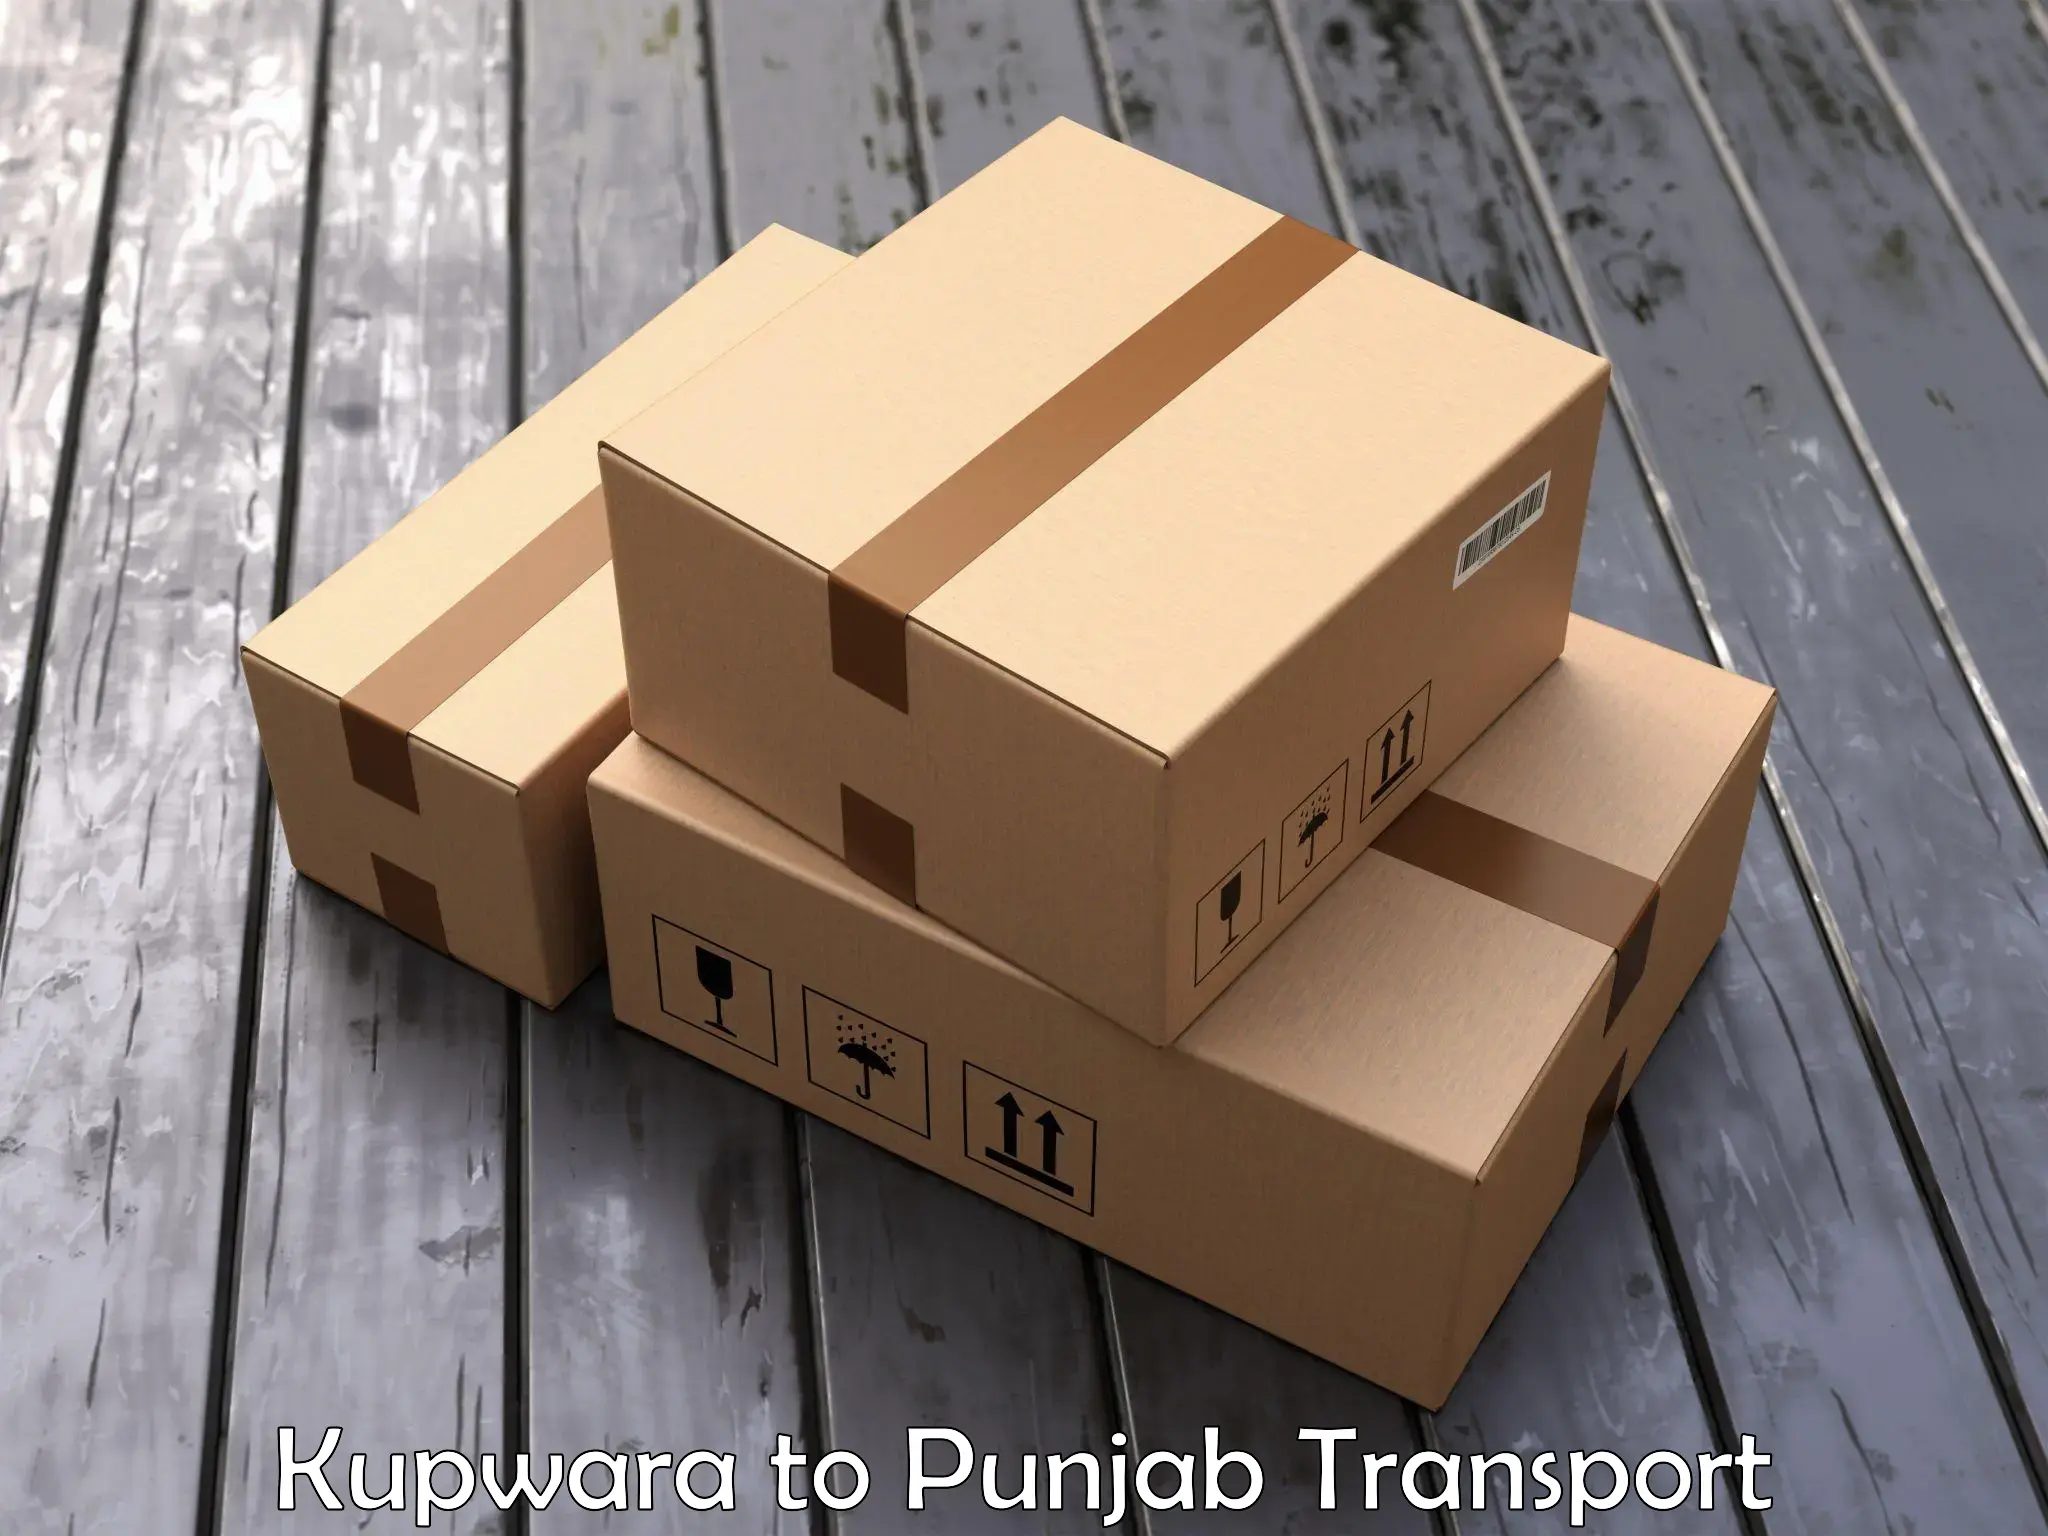 Furniture transport service Kupwara to Talwara